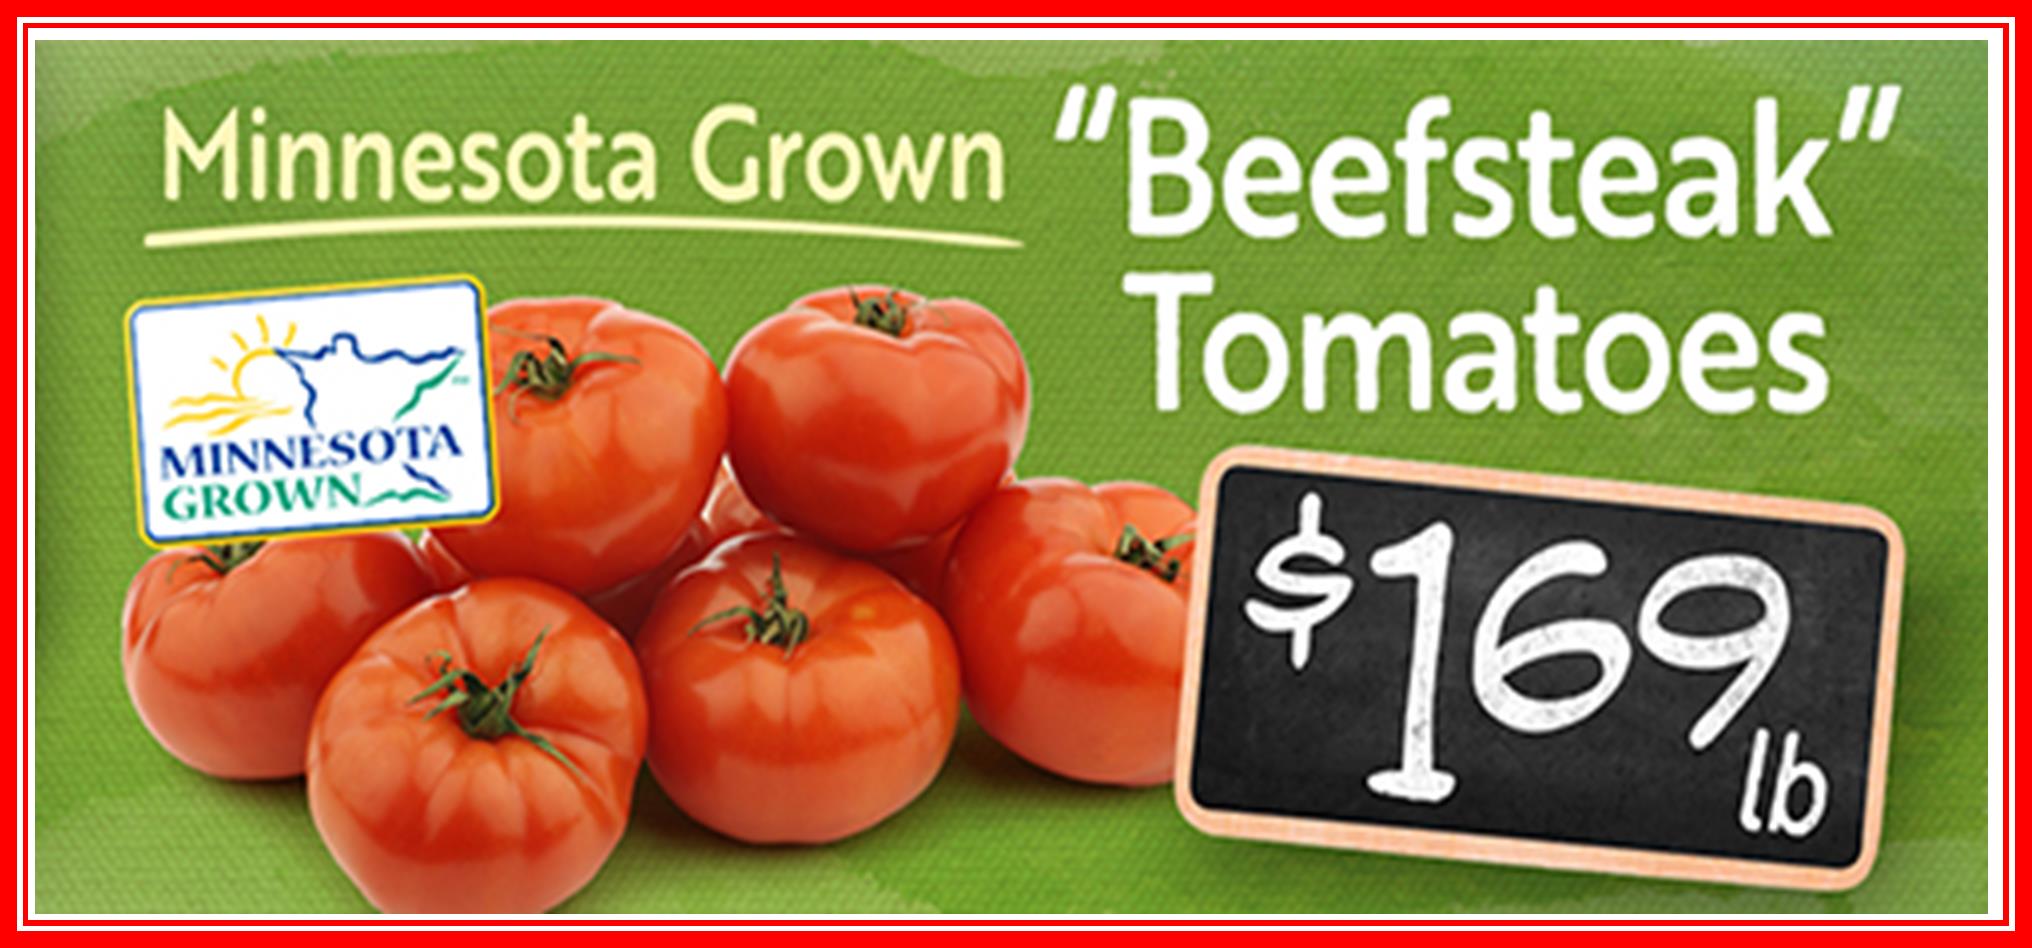 Tomatoes Beefsteak HG 169.jpg